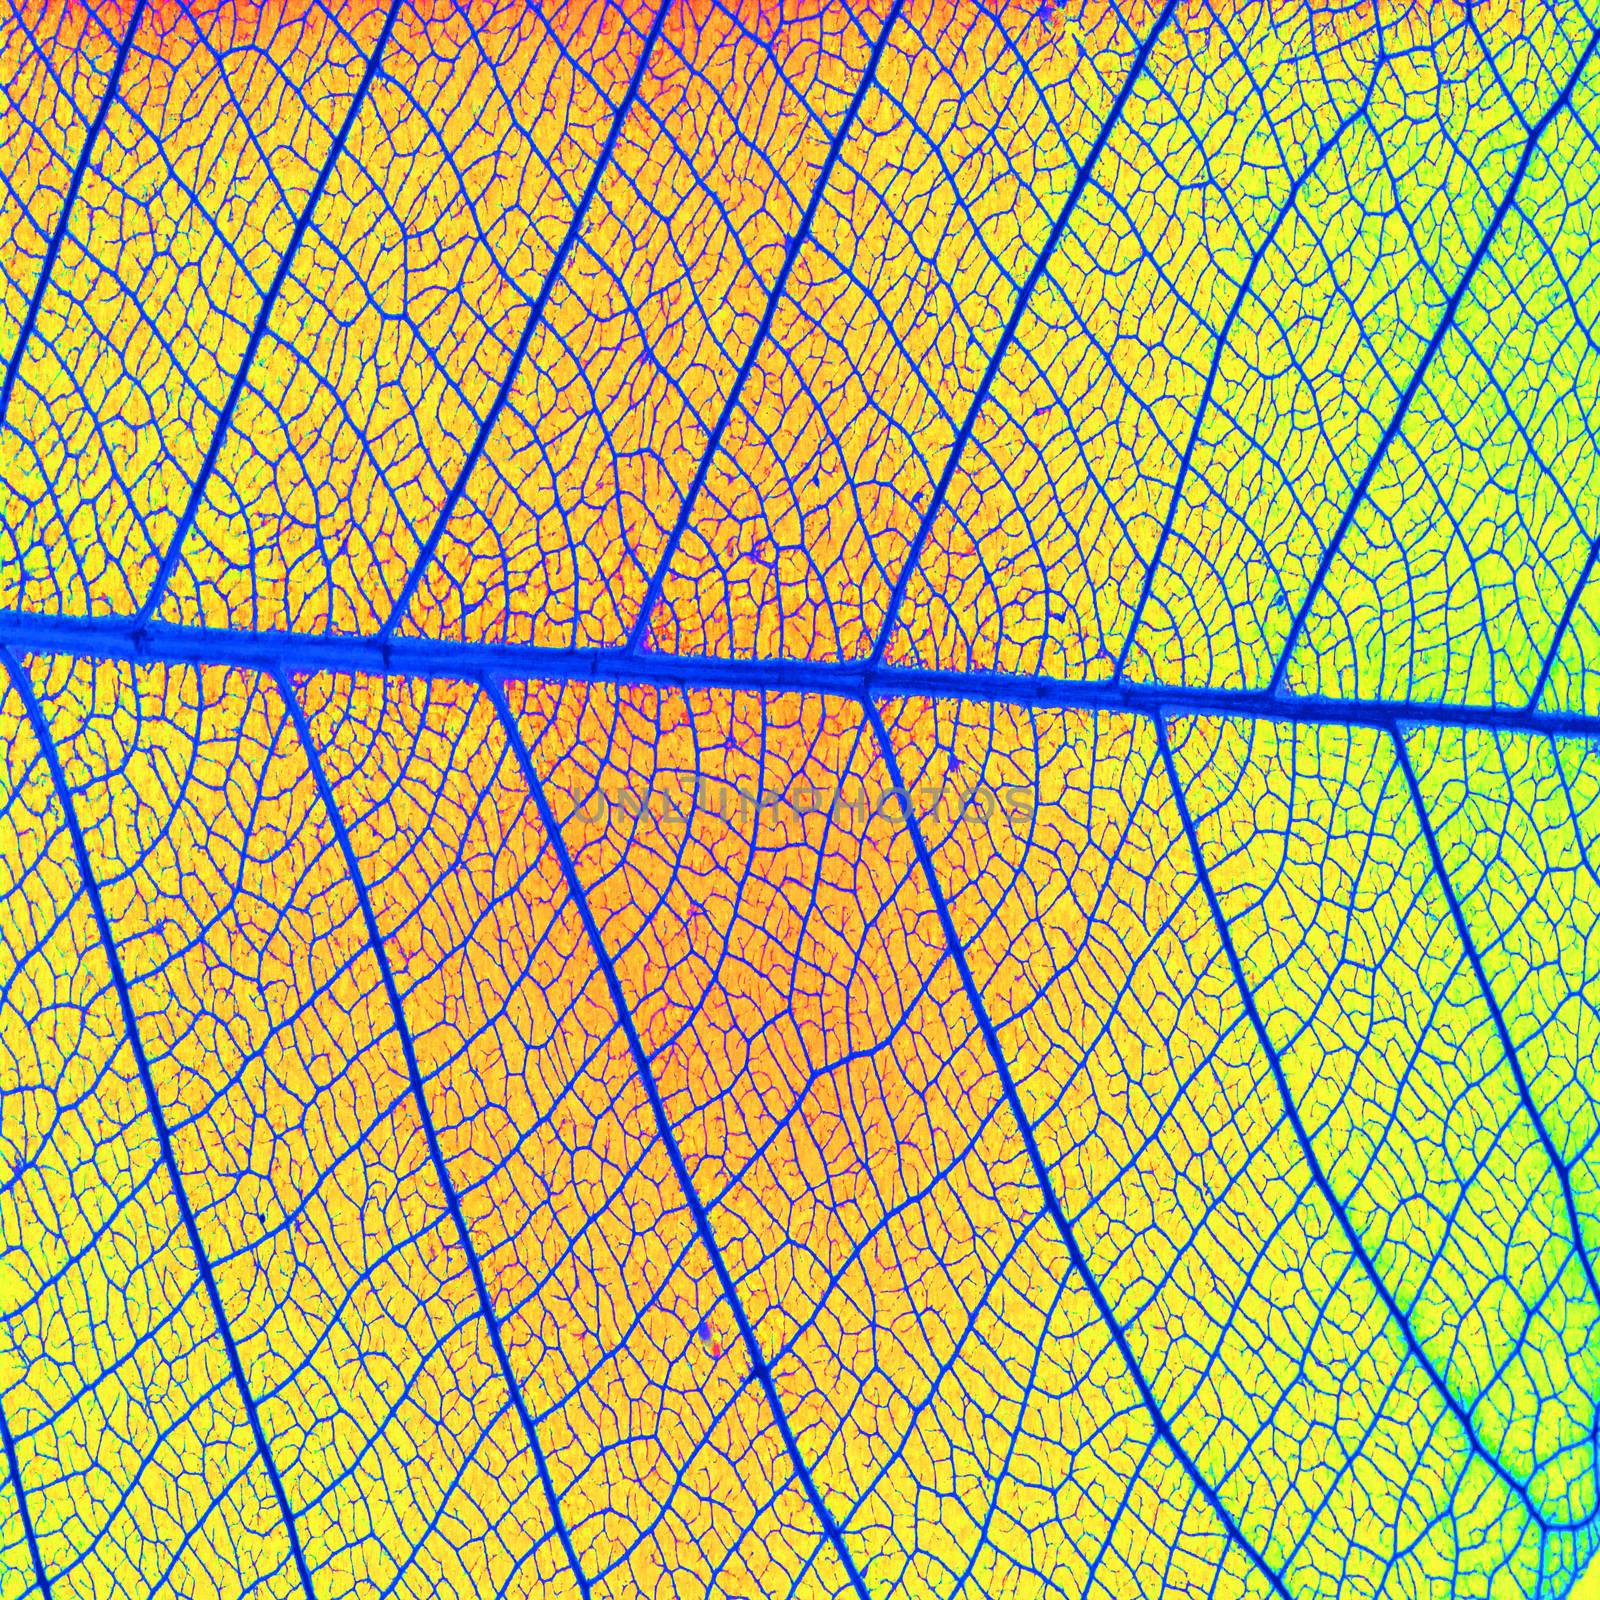 Skeleton leaf texture by wyoosumran